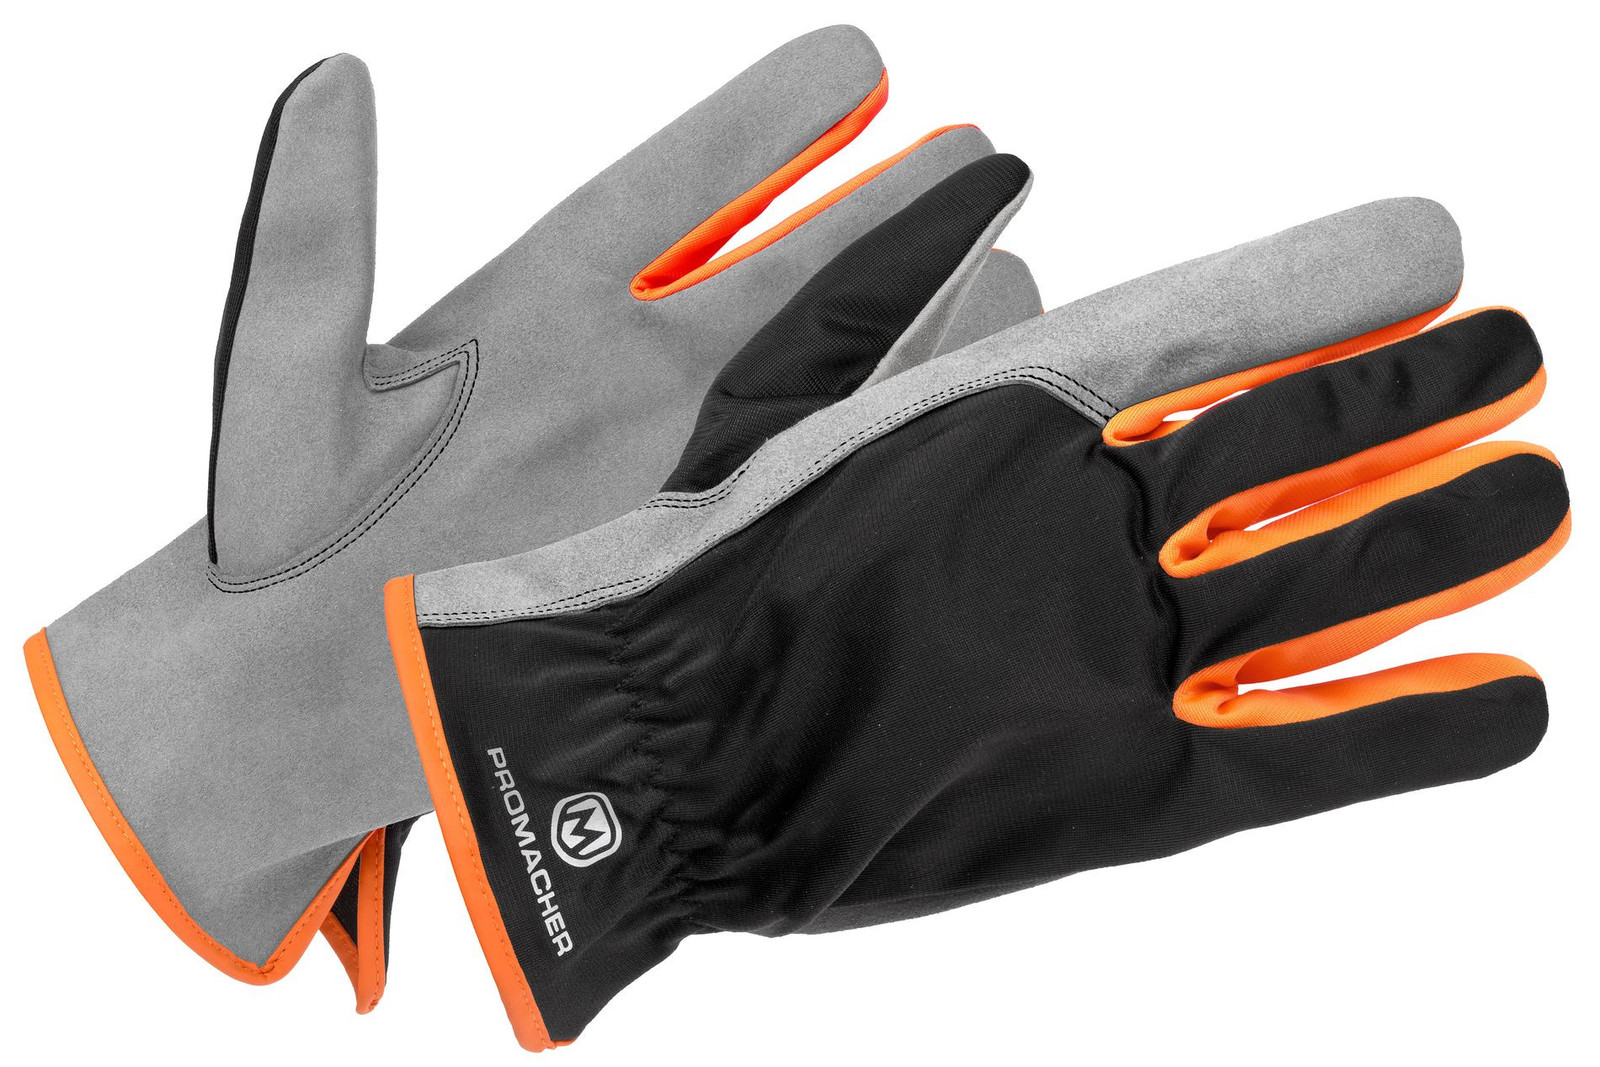 Pracovné rukavice Promacher Carpos kombinované - veľkosť: 10/XL, farba: svetlo sivá/ oranžová